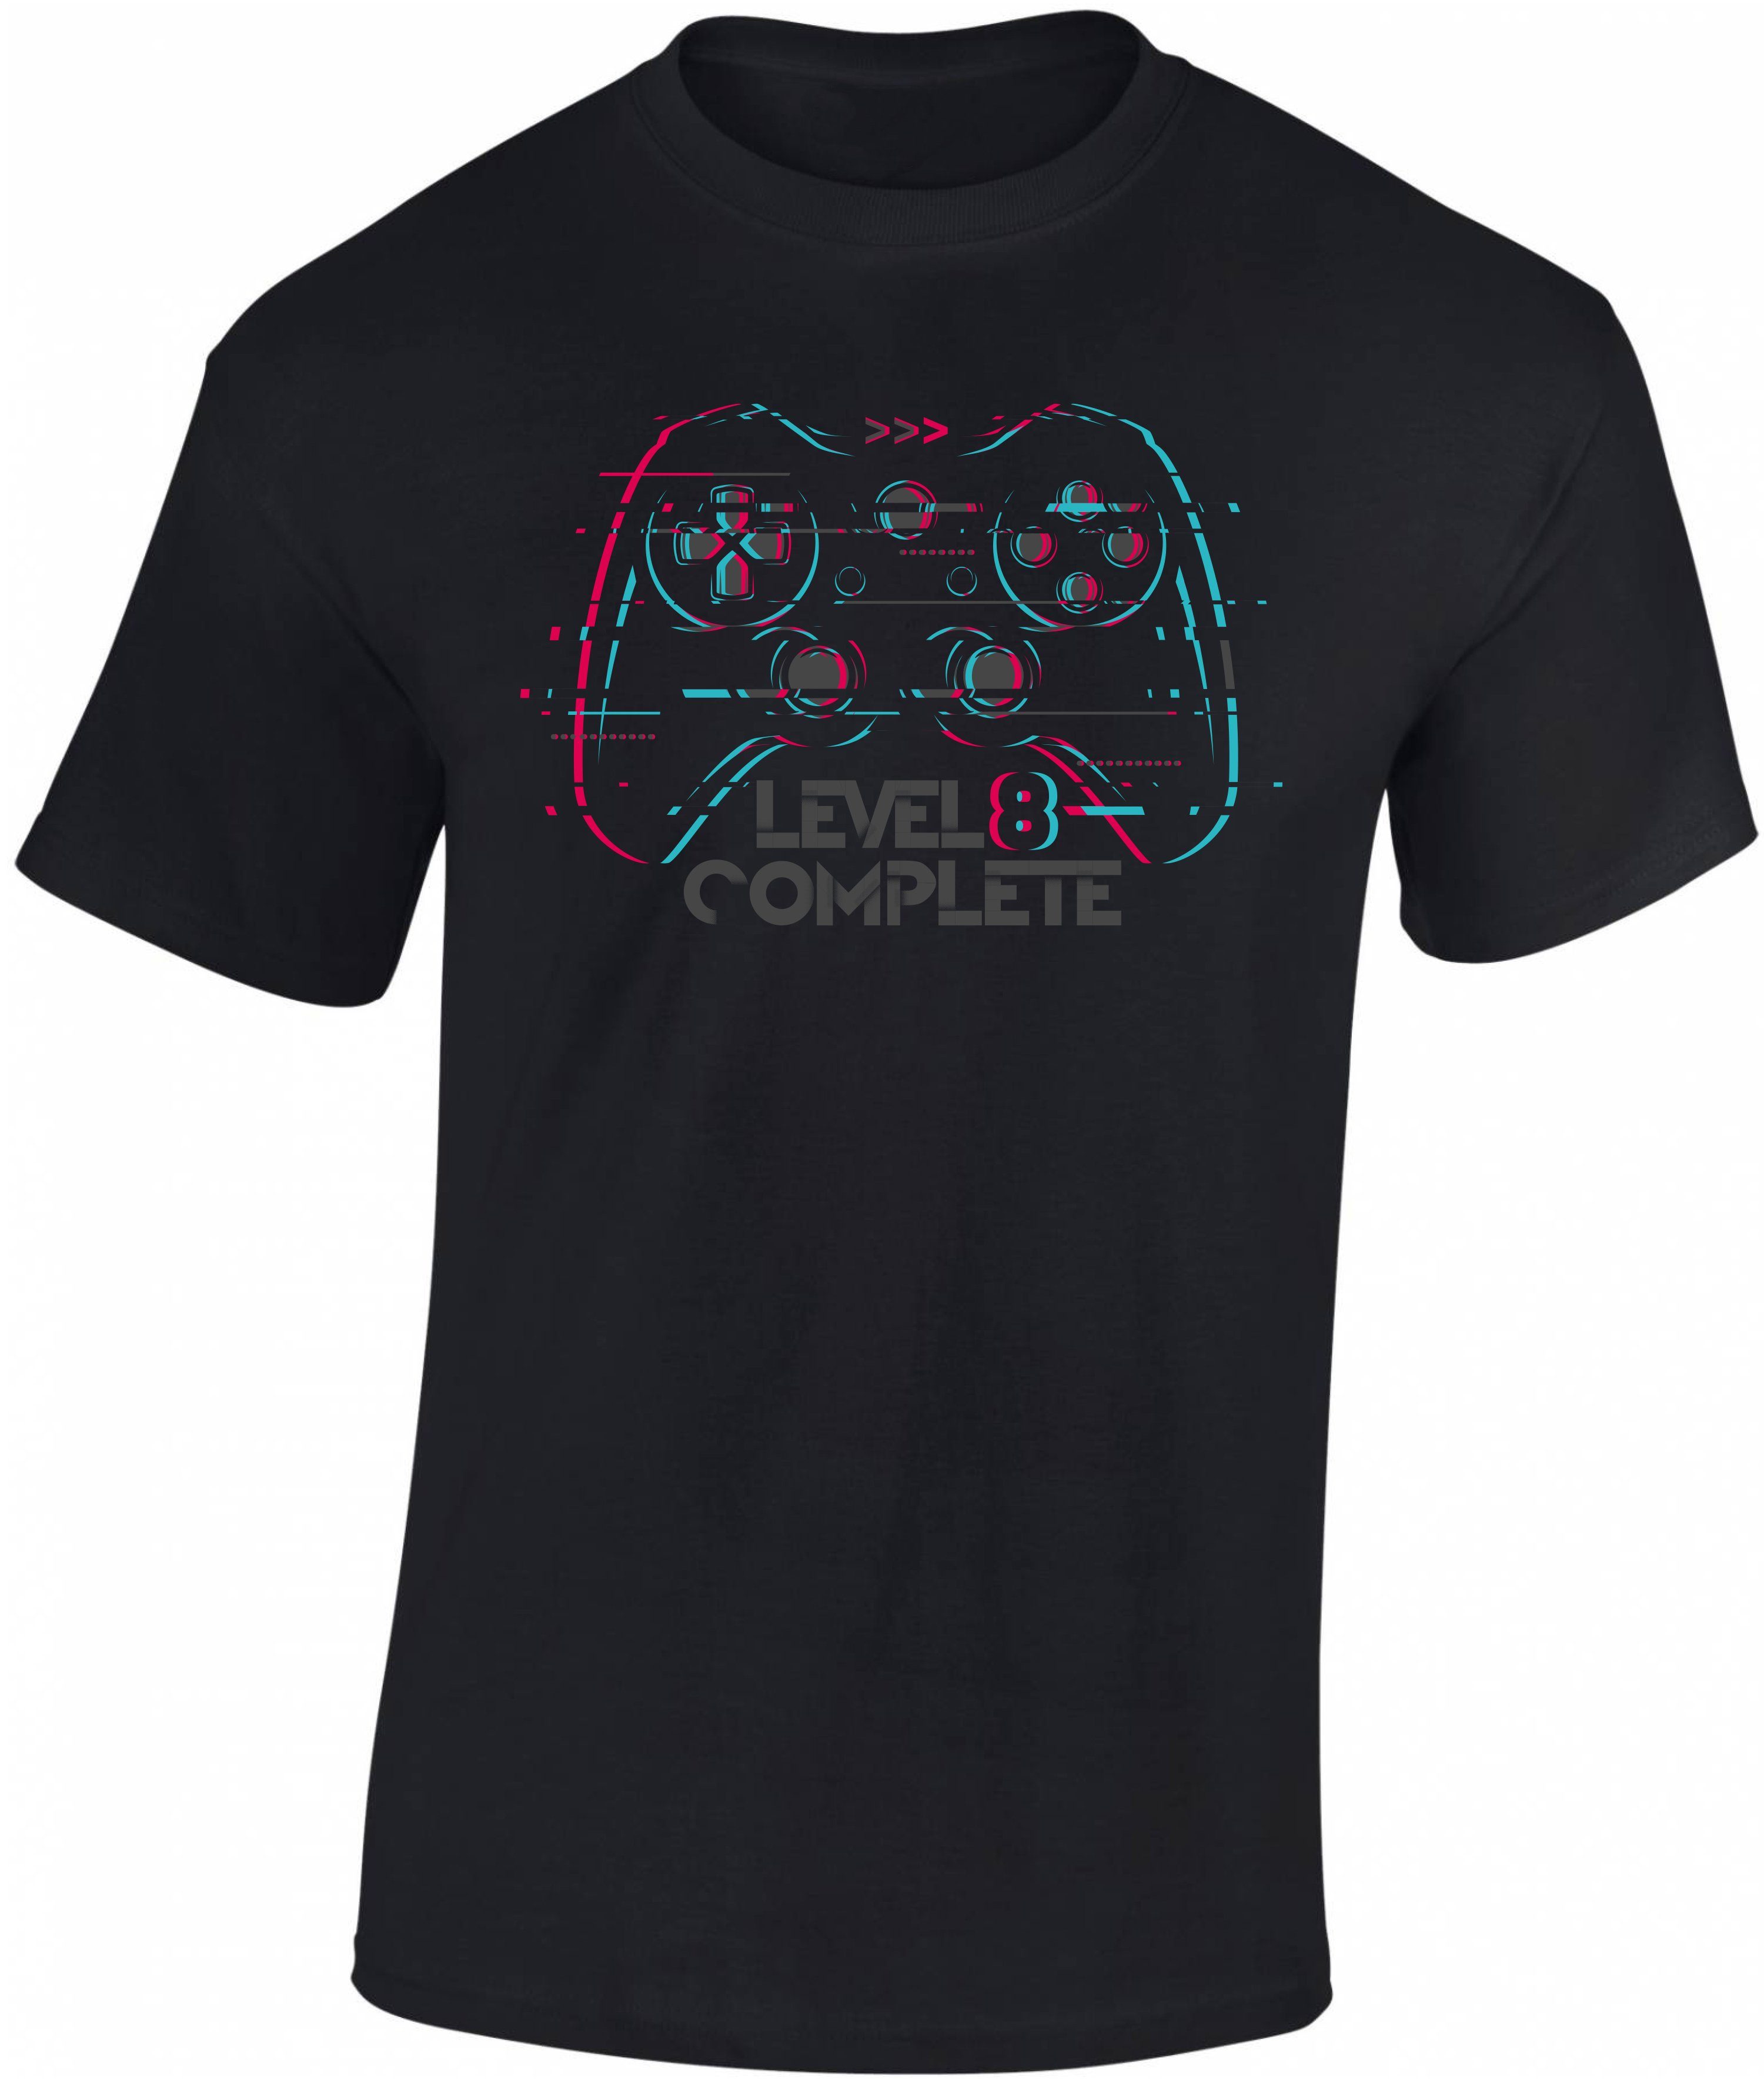 Baddery Print-Shirt Jungen Gamer Level 8 Siebdruck, Complete Baumwolle : 8. aus hochwertiger Geburtstag zum T-Shirt